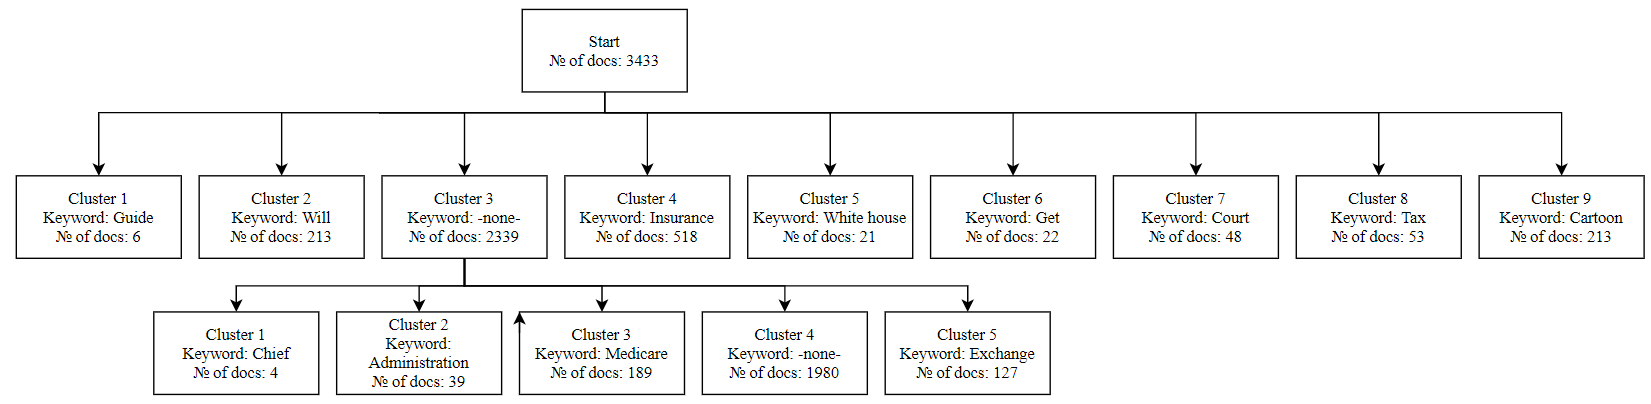 KHN clustering tree